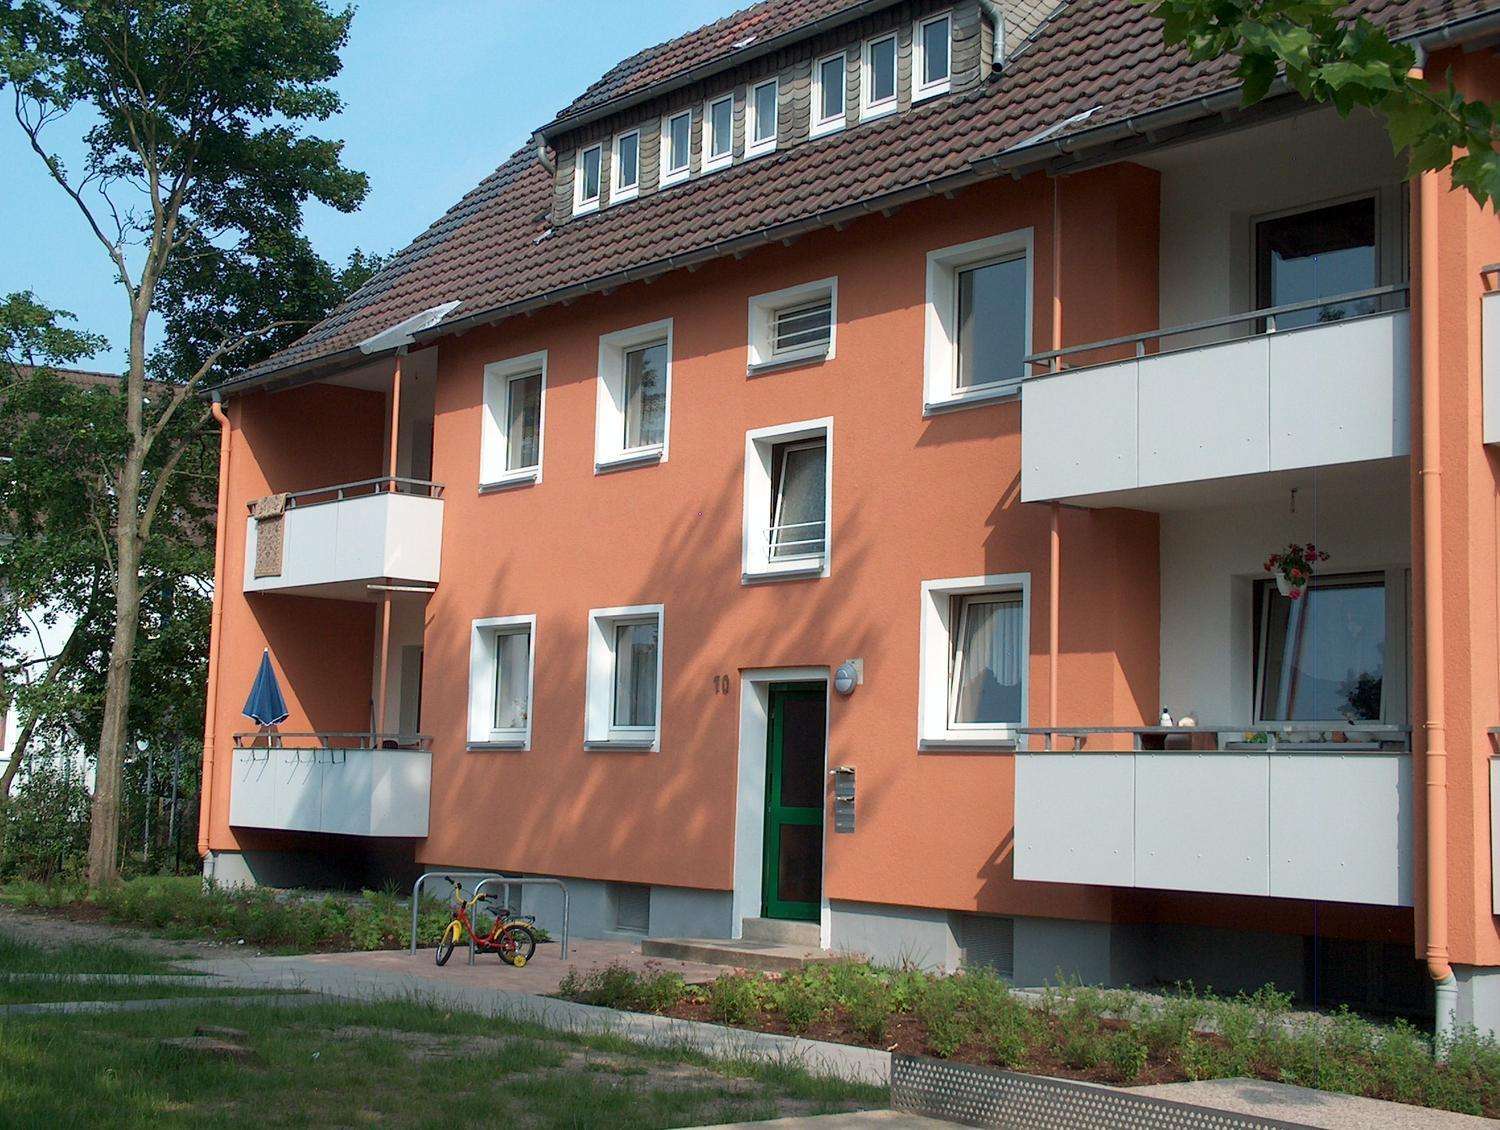 39+ frisch Bild Wohnung Delbrück Mieten / Wohnung mieten in Delbrück Mietwohnungen Delbrück / Sie sind auf der suche nach wohnungen mieten, dann sind sie hier genau richtig.